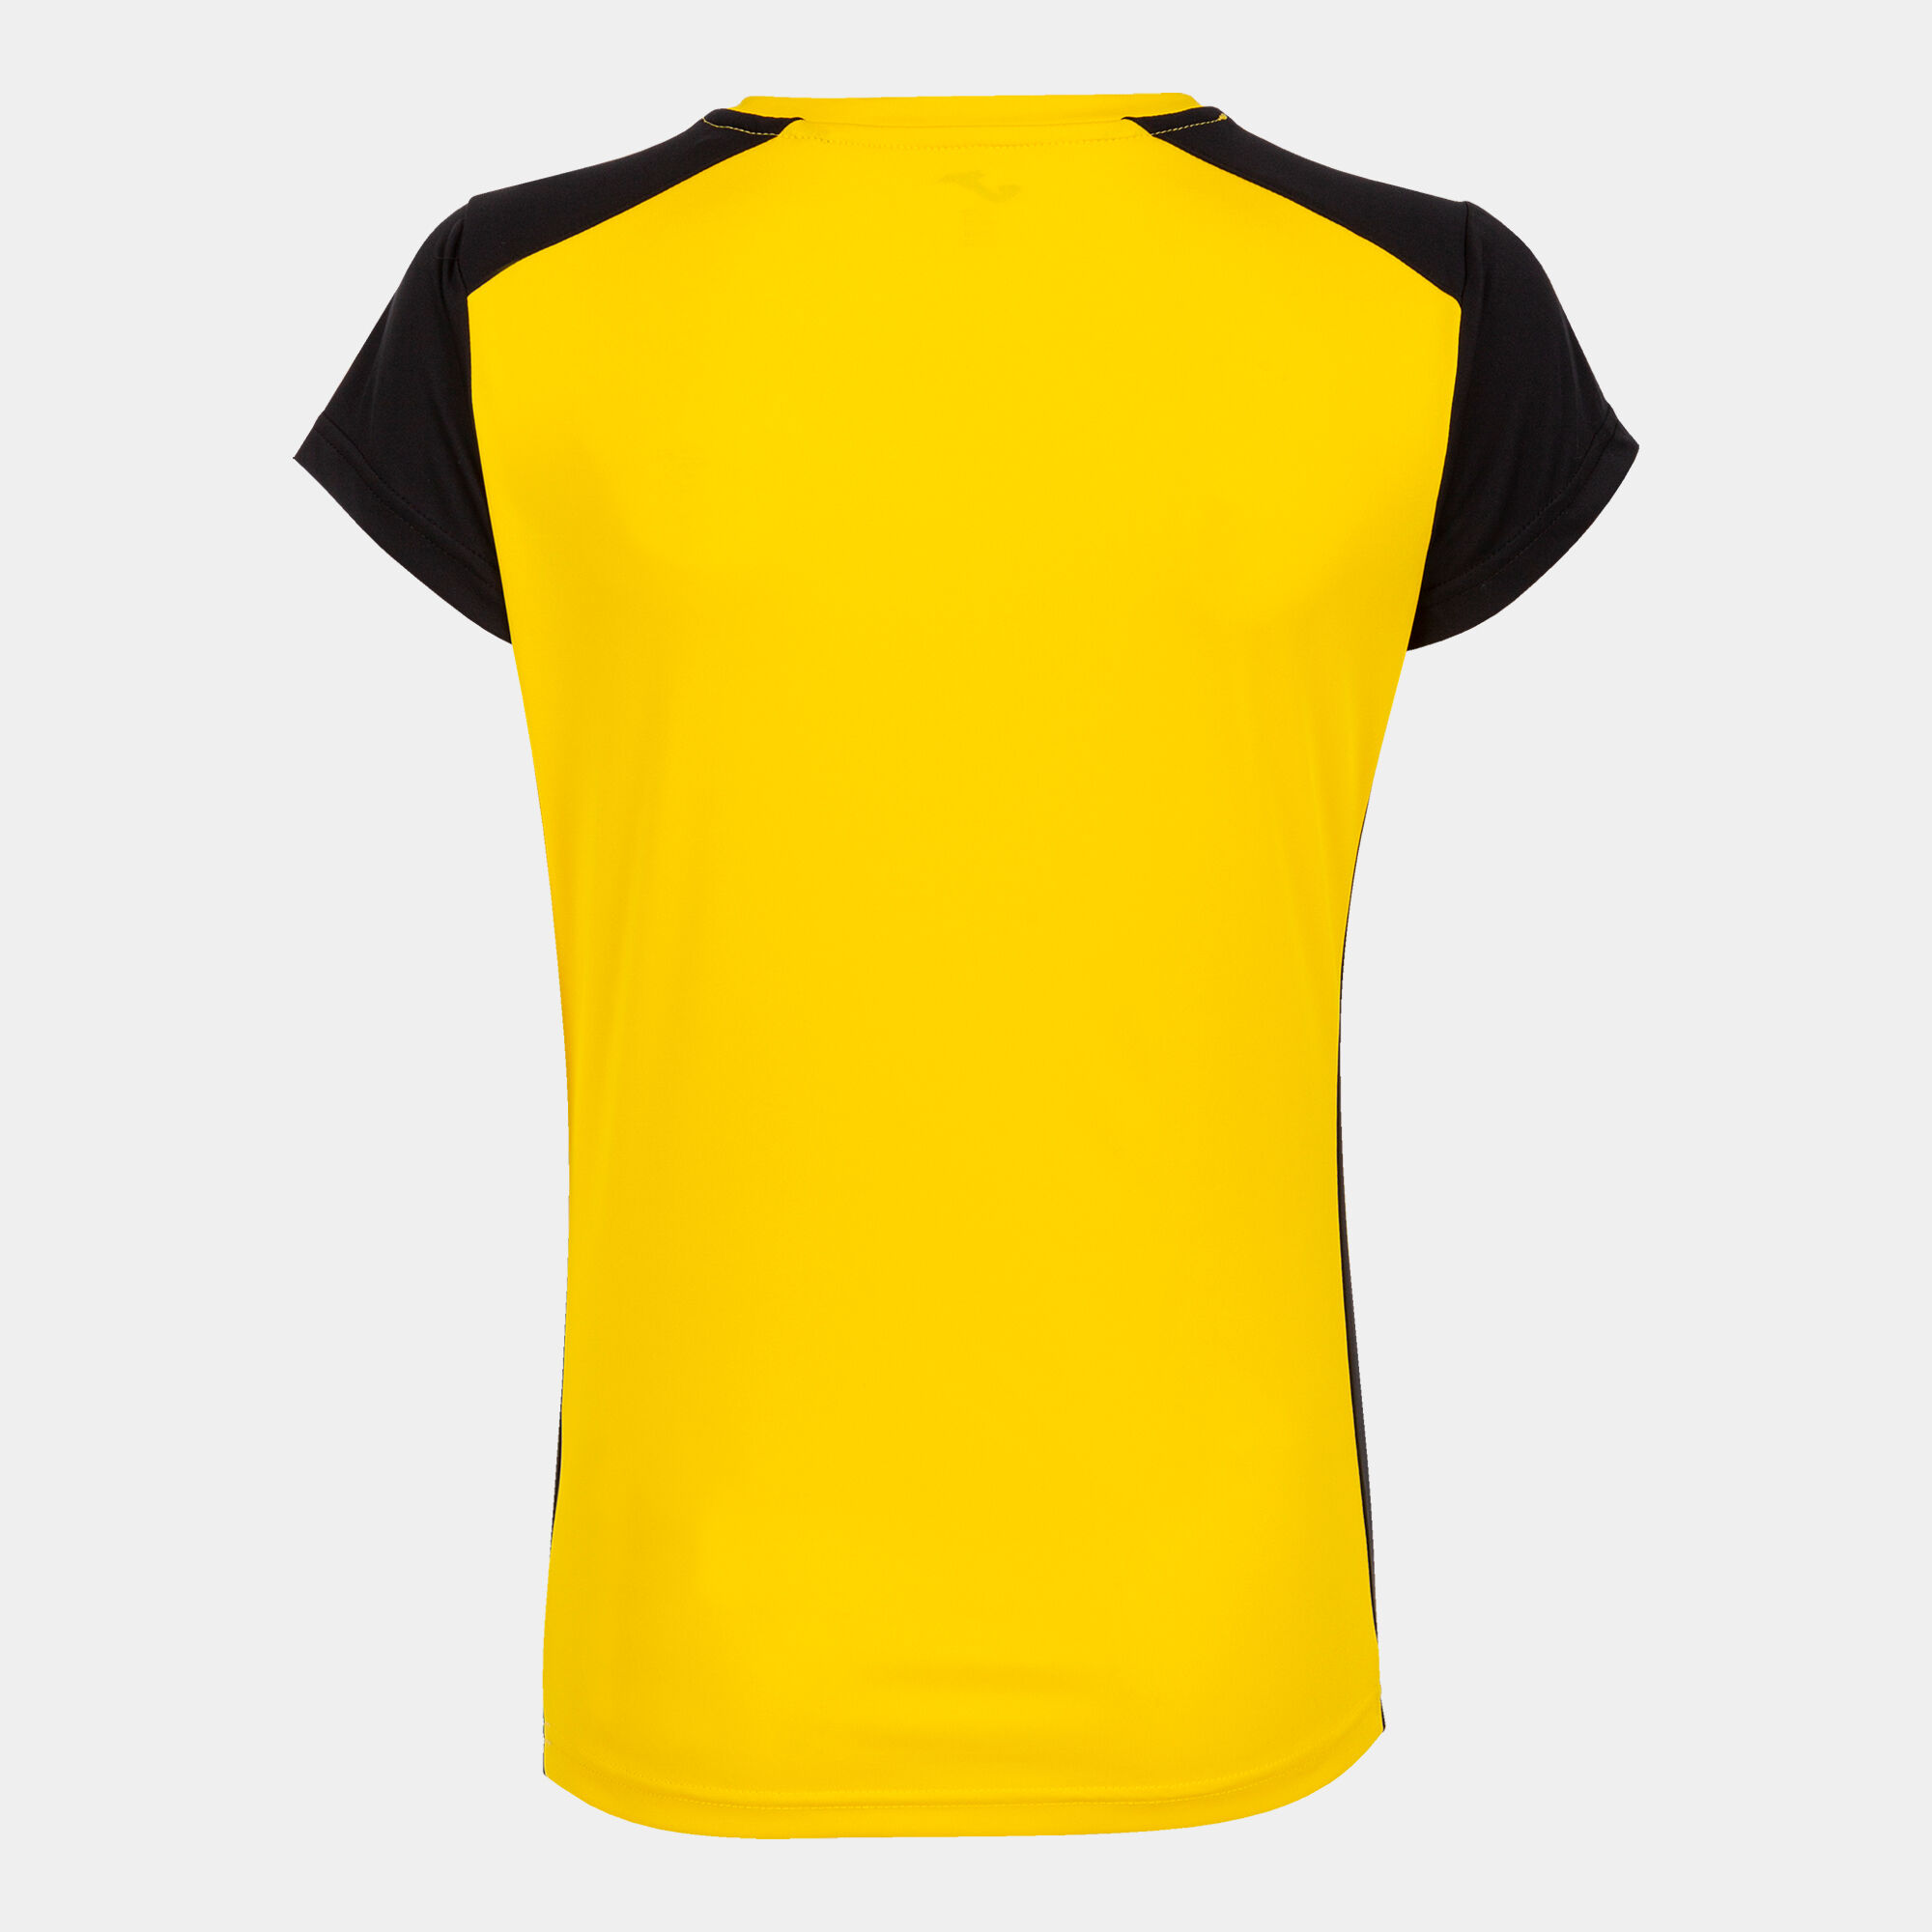 Camiseta manga corta mujer Record II amarillo negro